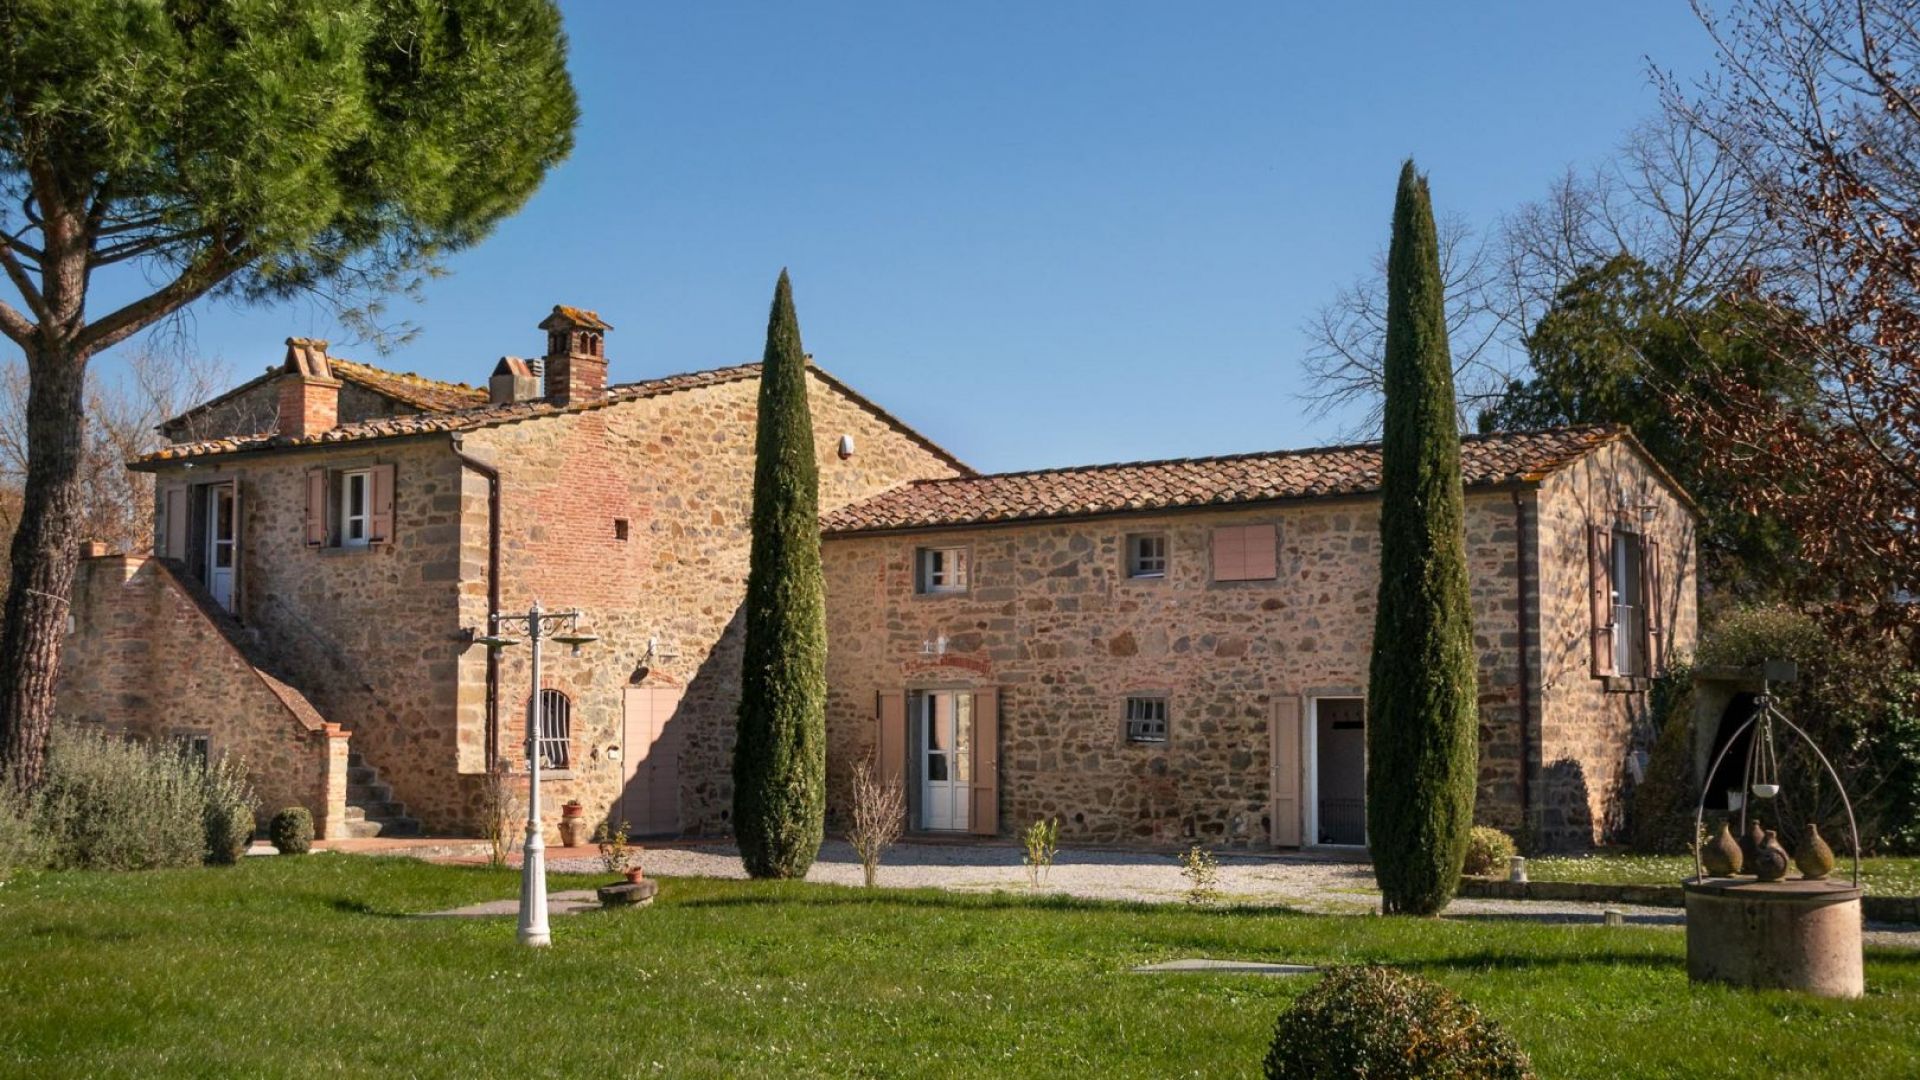 For sale villa in  Cortona Toscana